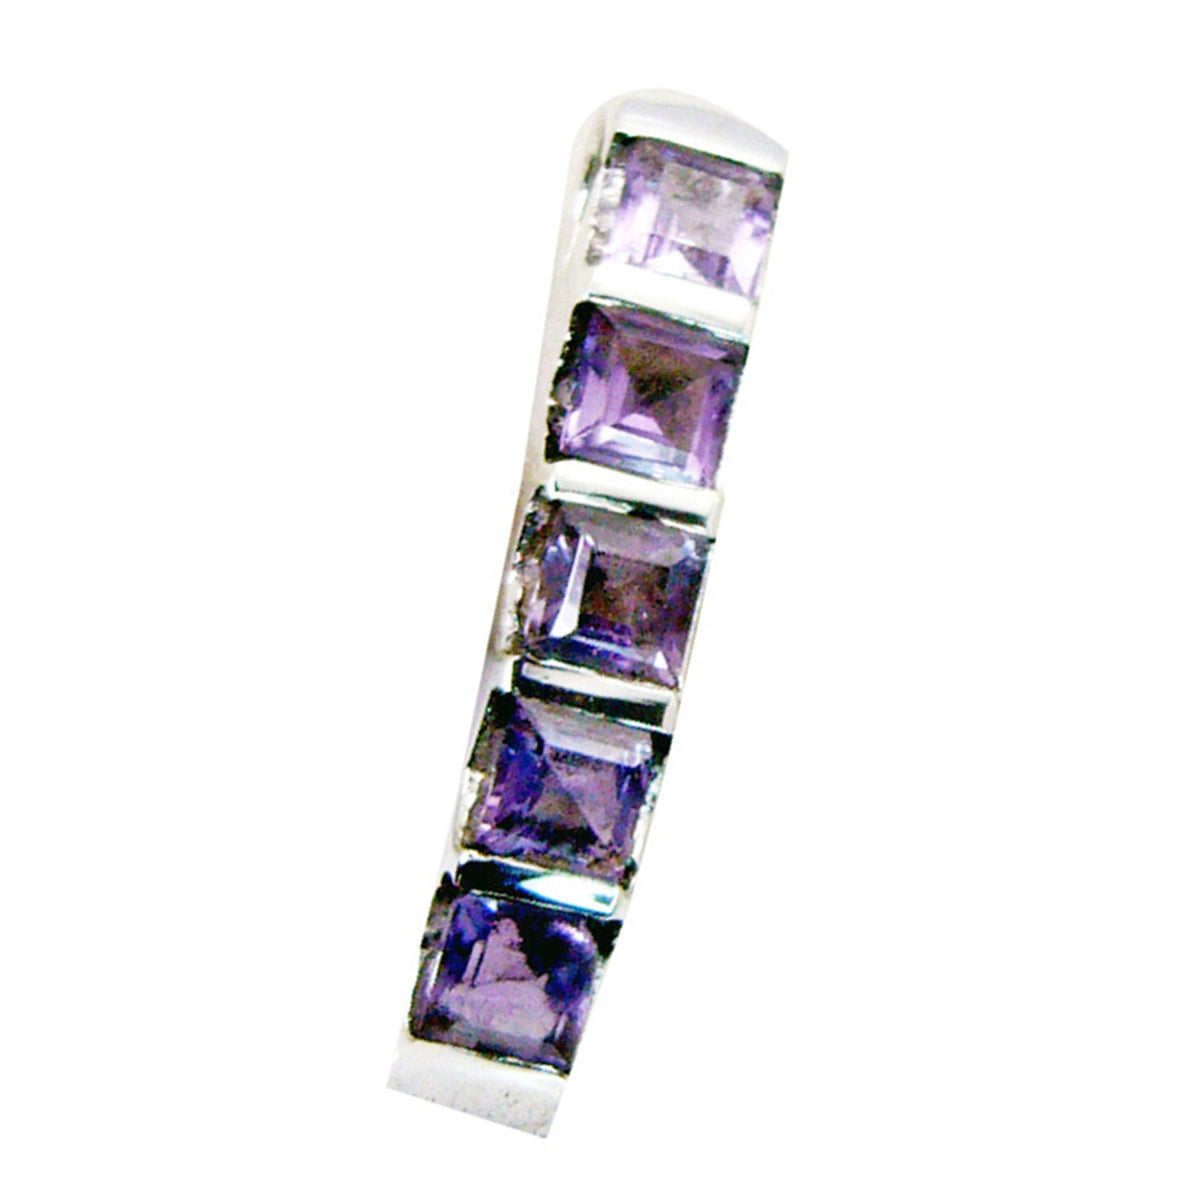 Riyo magníficas gemas ovaladas facetadas amatista púrpura colgante de plata regalo para el día del boxeo